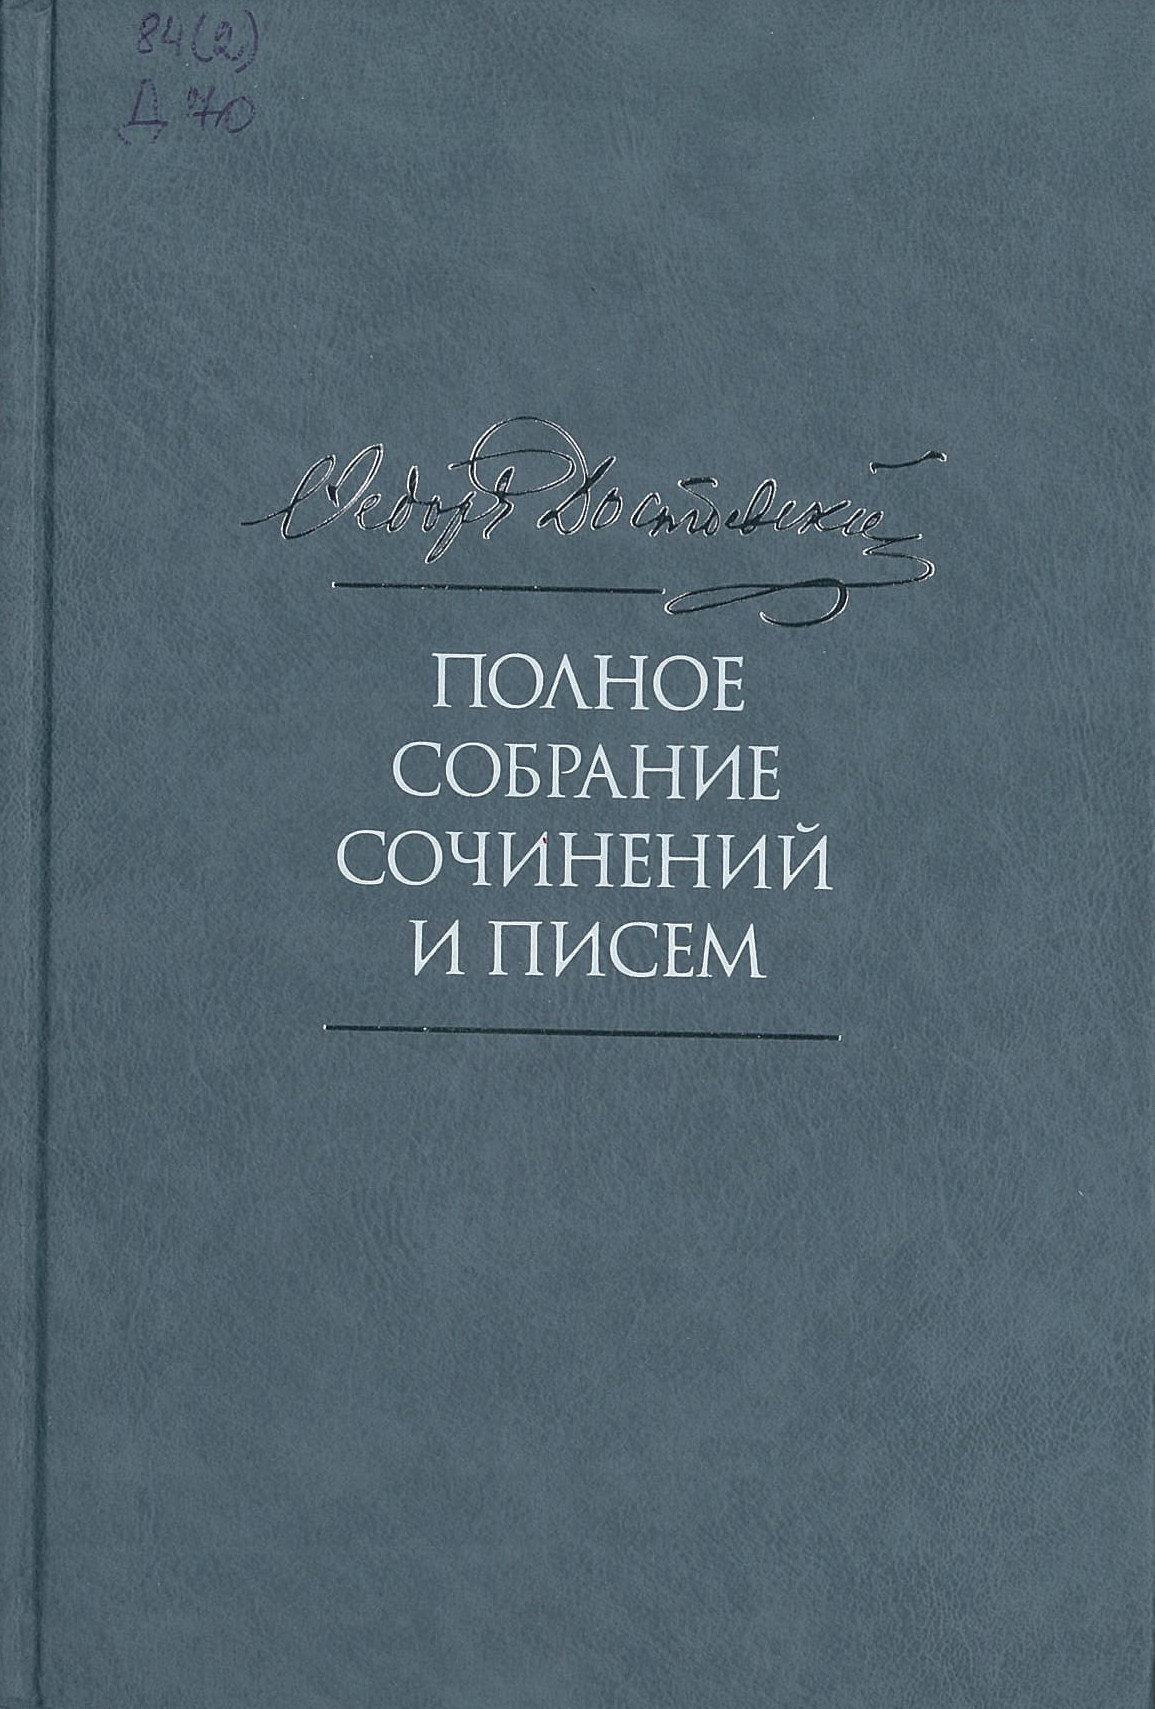 Достоевский, Ф. М. Полное собрание сочинений и писем в 35 томах